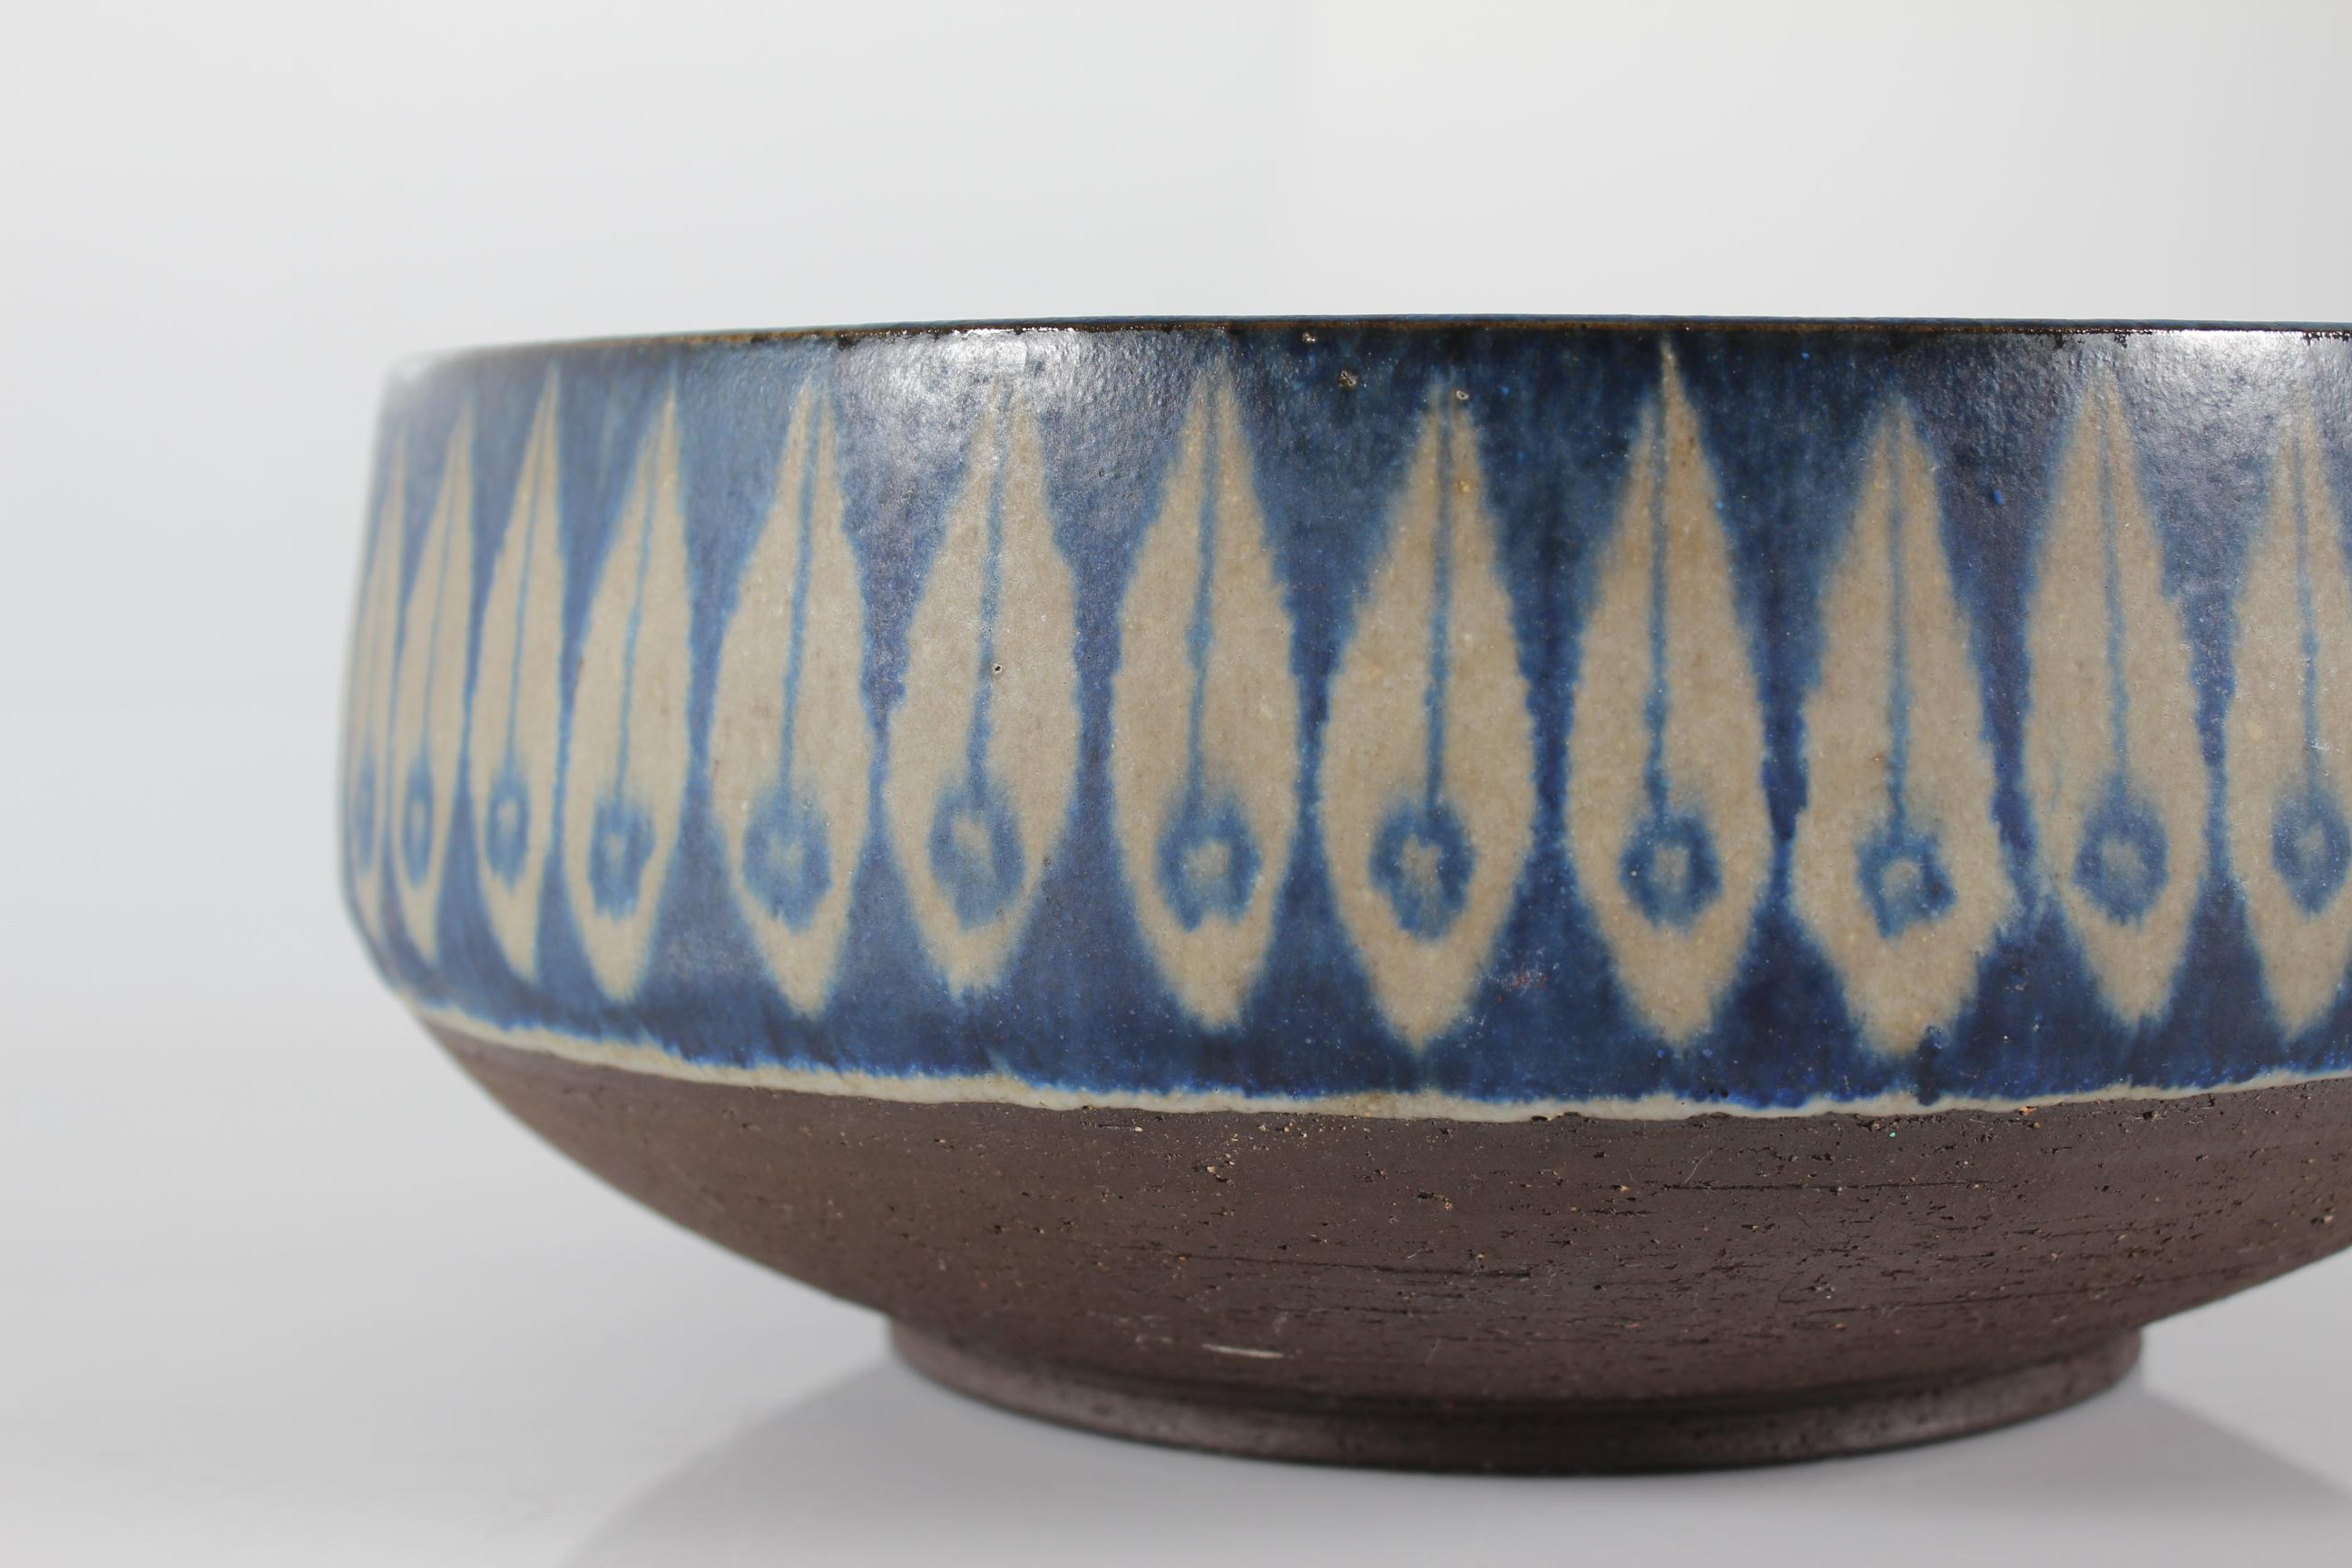 Große Keramikschüssel aus Schamotte-Ton, von Hand verziert mit einem Blattmuster. 
Glasiert mit seidenmatter grauer und kobaltblauer Glasur. 
Der äußere untere Teil bleibt unglasiert.
Hergestellt in seiner eigenen Keramikwerkstatt in Bisserup auf